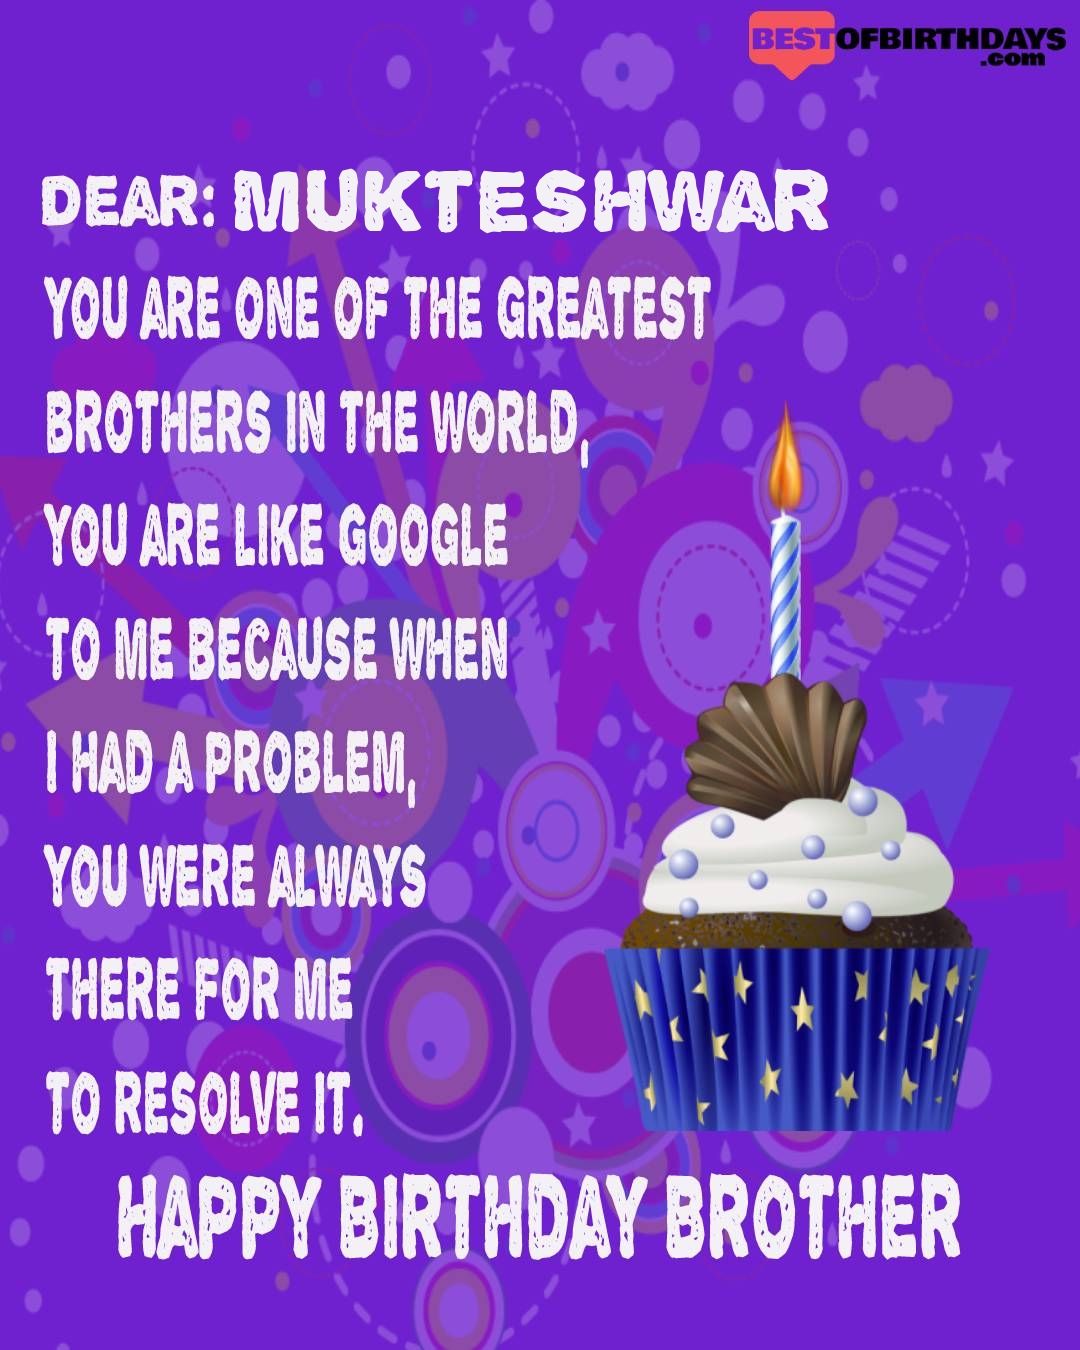 Happy birthday mukteshwar bhai brother bro